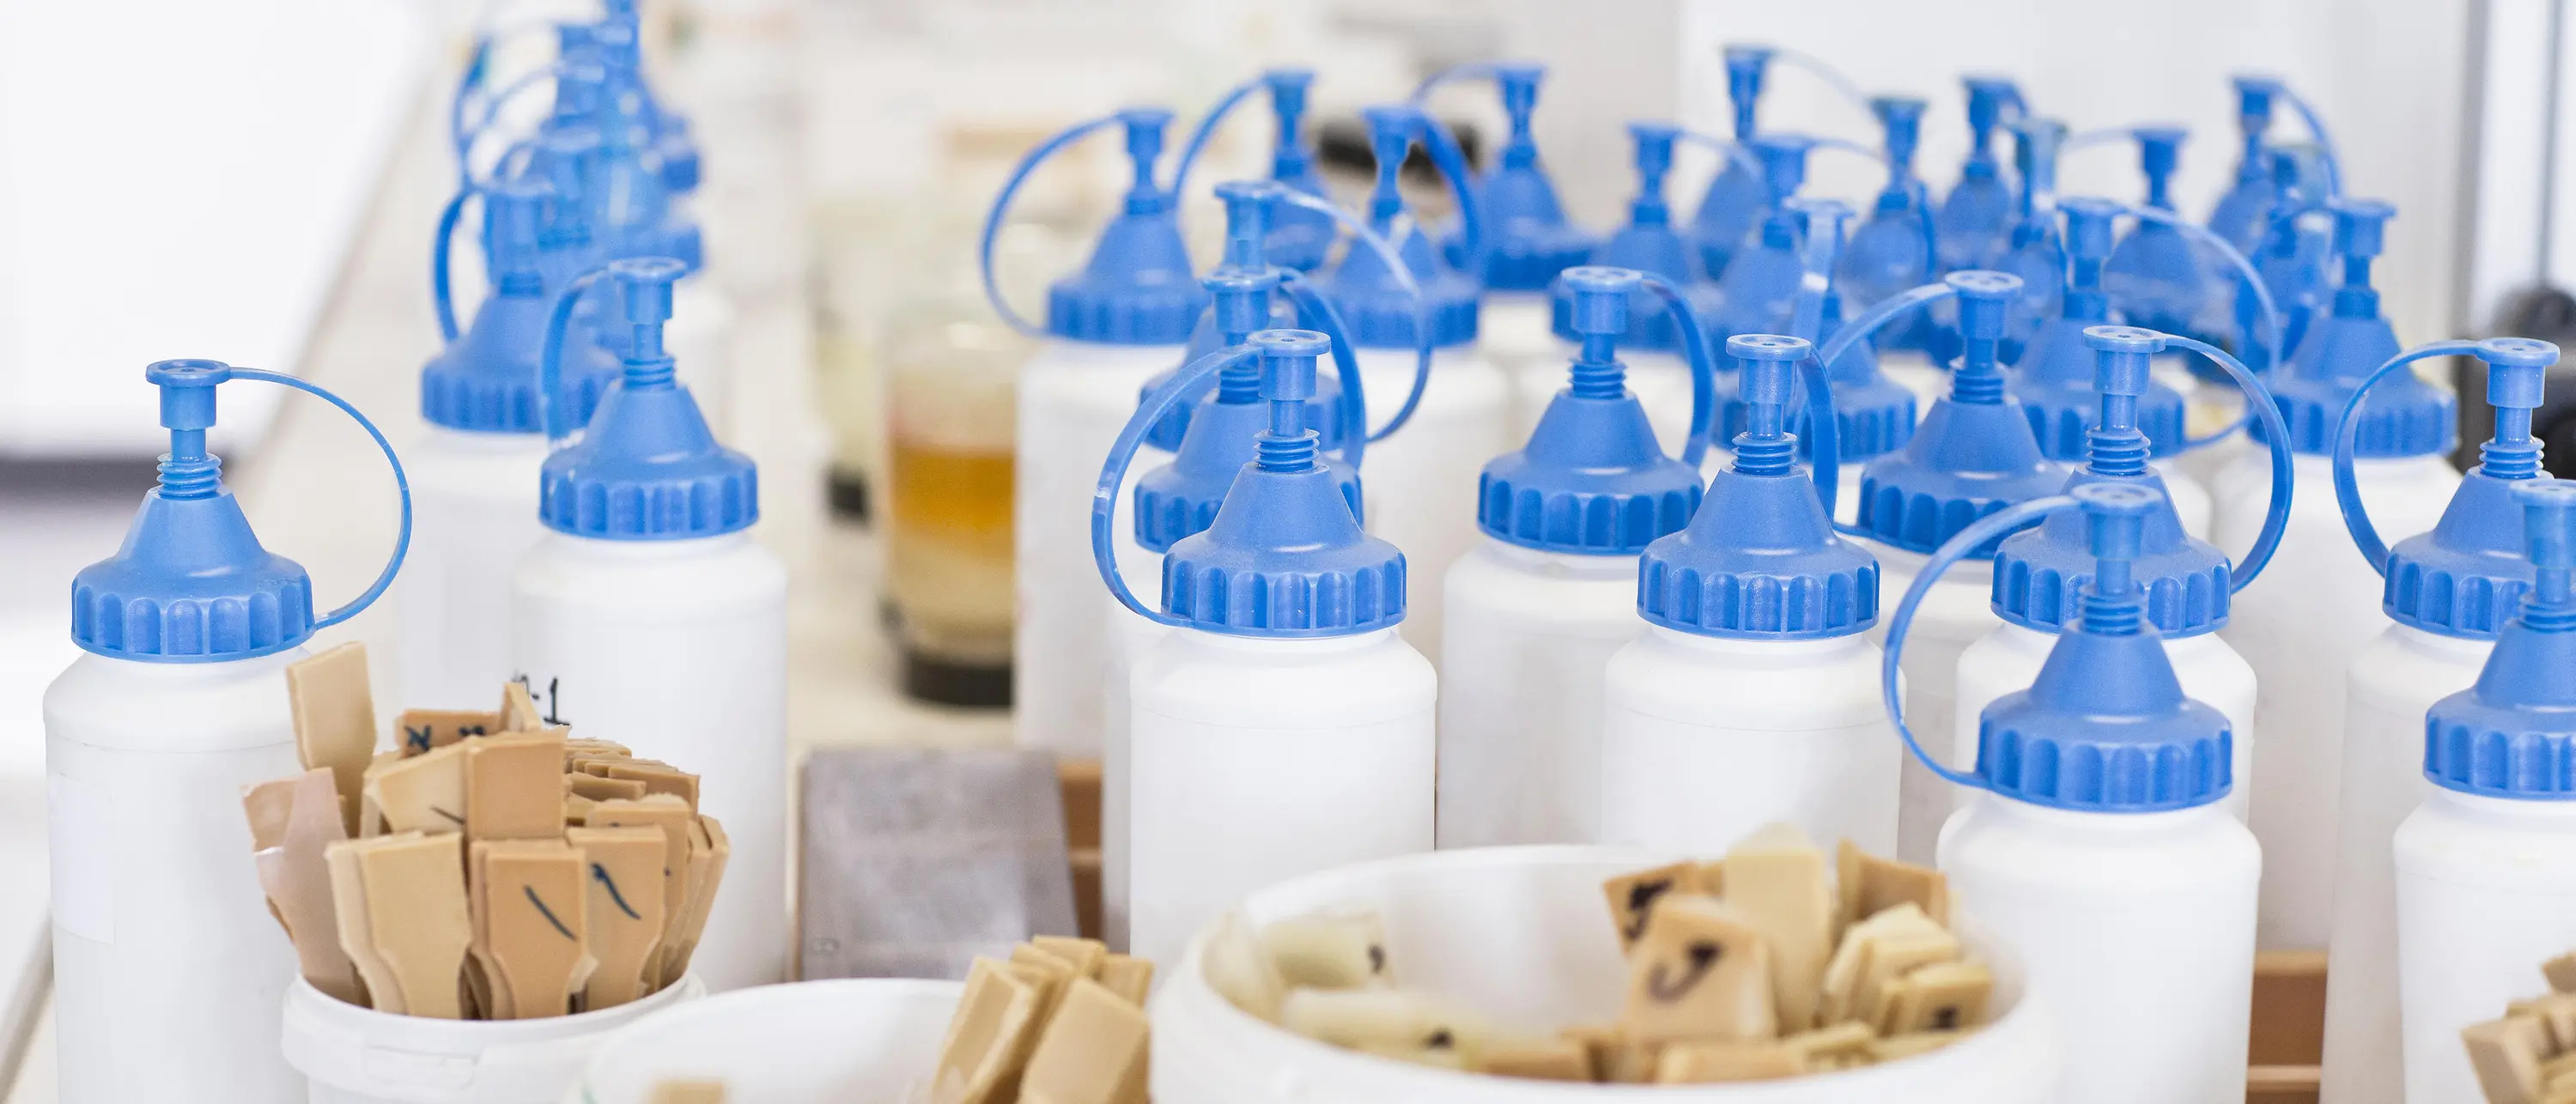 białe plastikowe butelki z niebieskimi nakrętkami pod kubkami z małymi drewnianymi szpatułkami